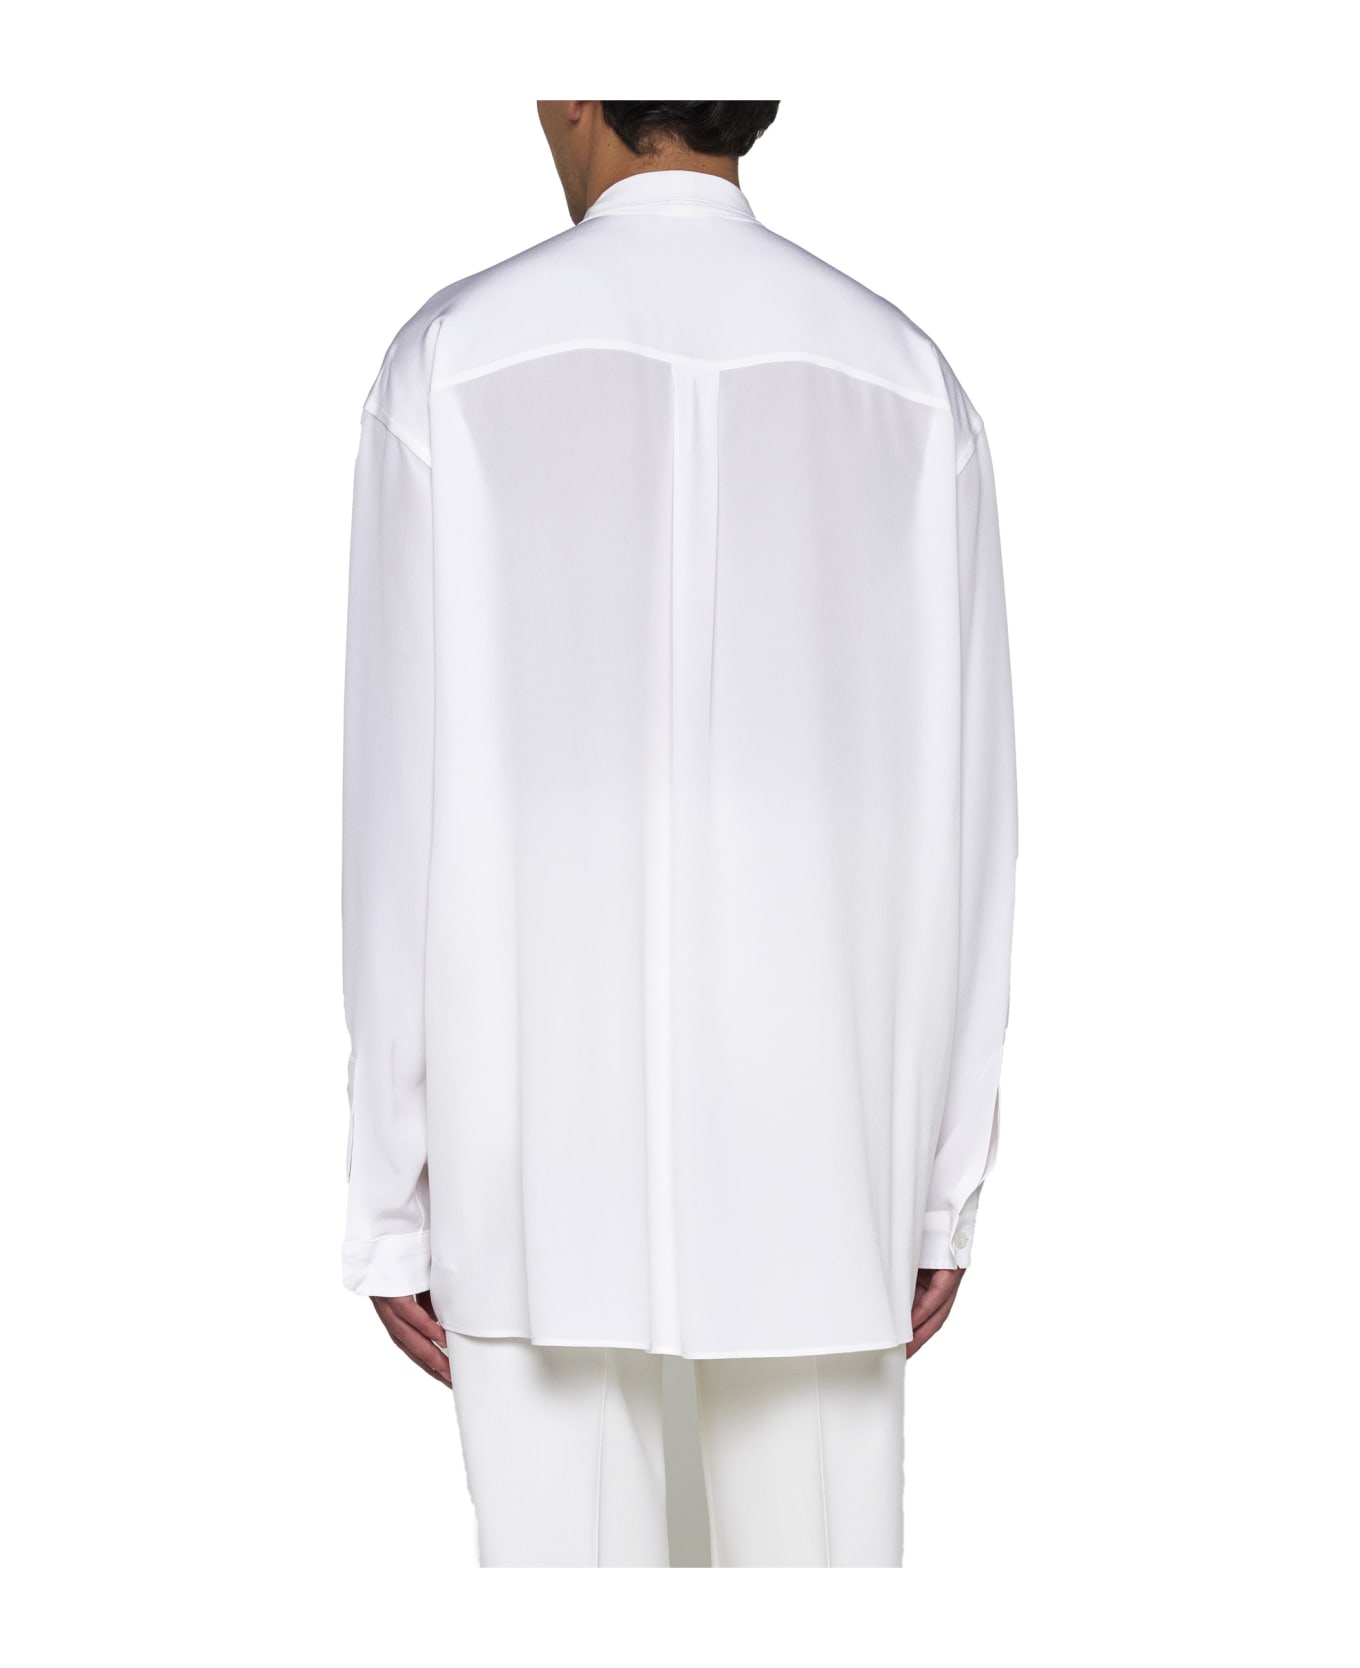 Dolce & Gabbana Shirt - Bianco otticco